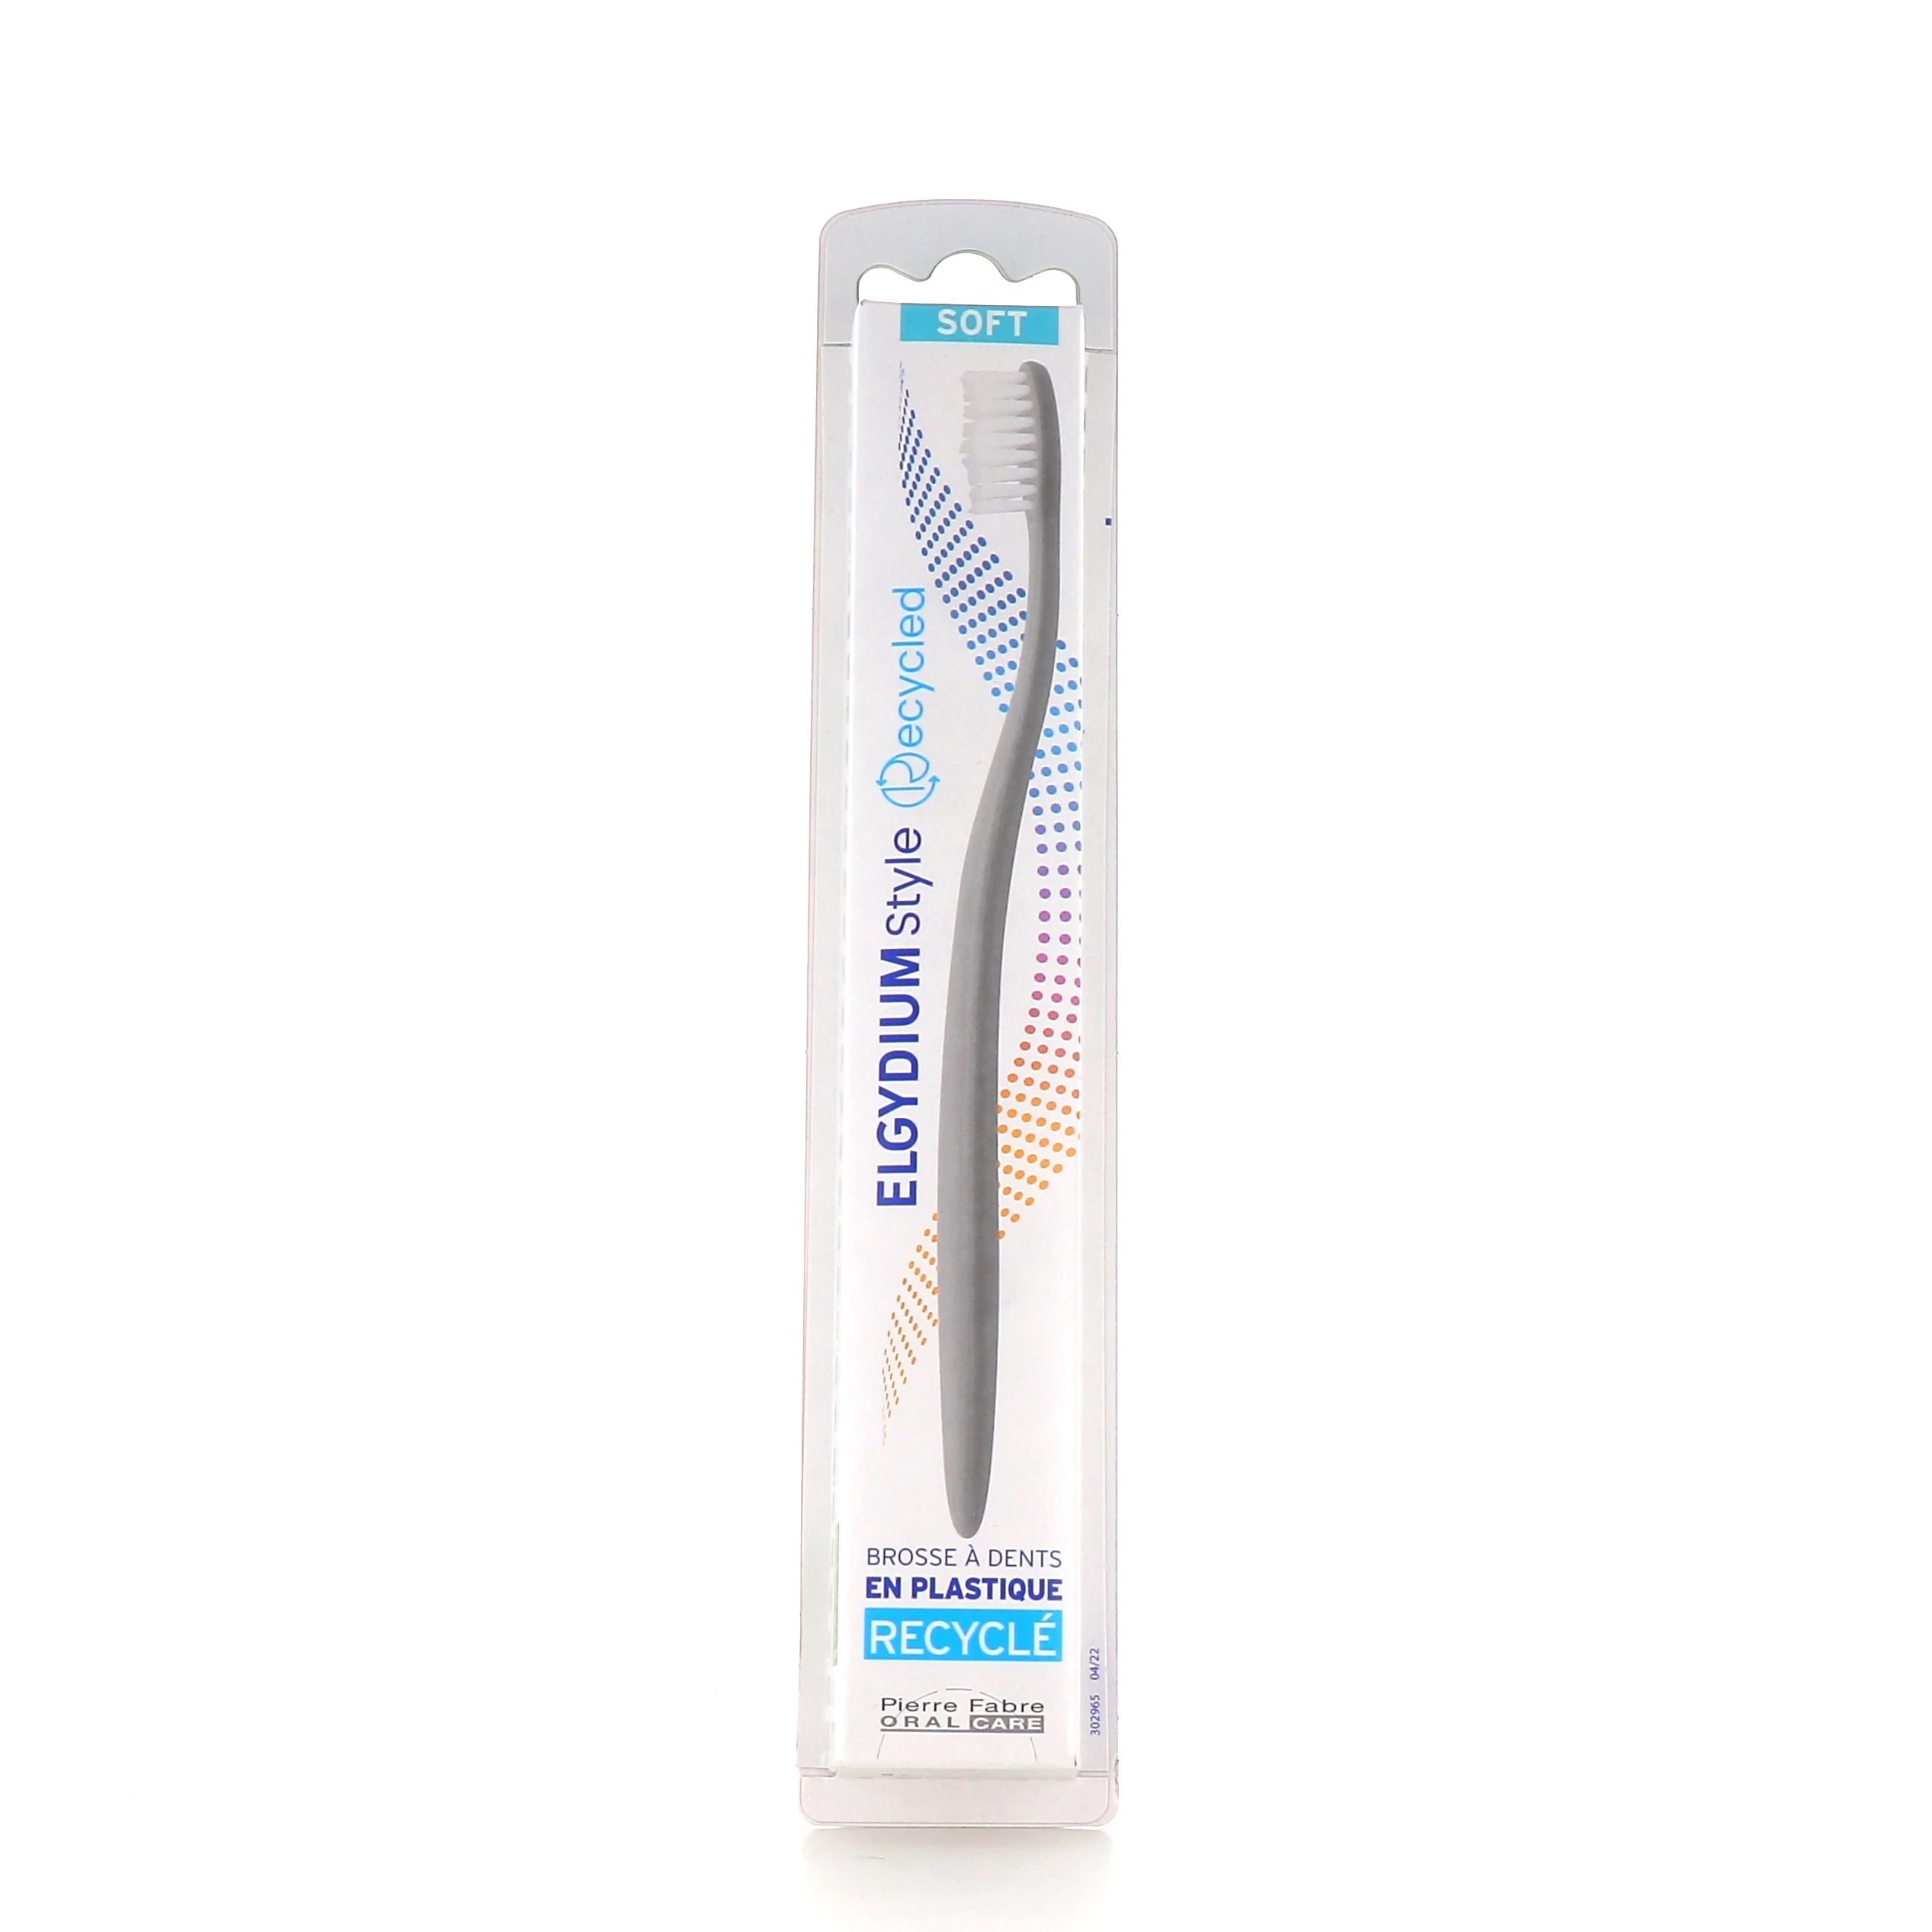 Elgydium Style Recycled Toothbrush Soft Χειροκίνητη Οδοντόβουρτσα Κατασκευασμένη Από Ανακυκλώσιμα Υλικά 1 Τεμάχιο – Γκρι